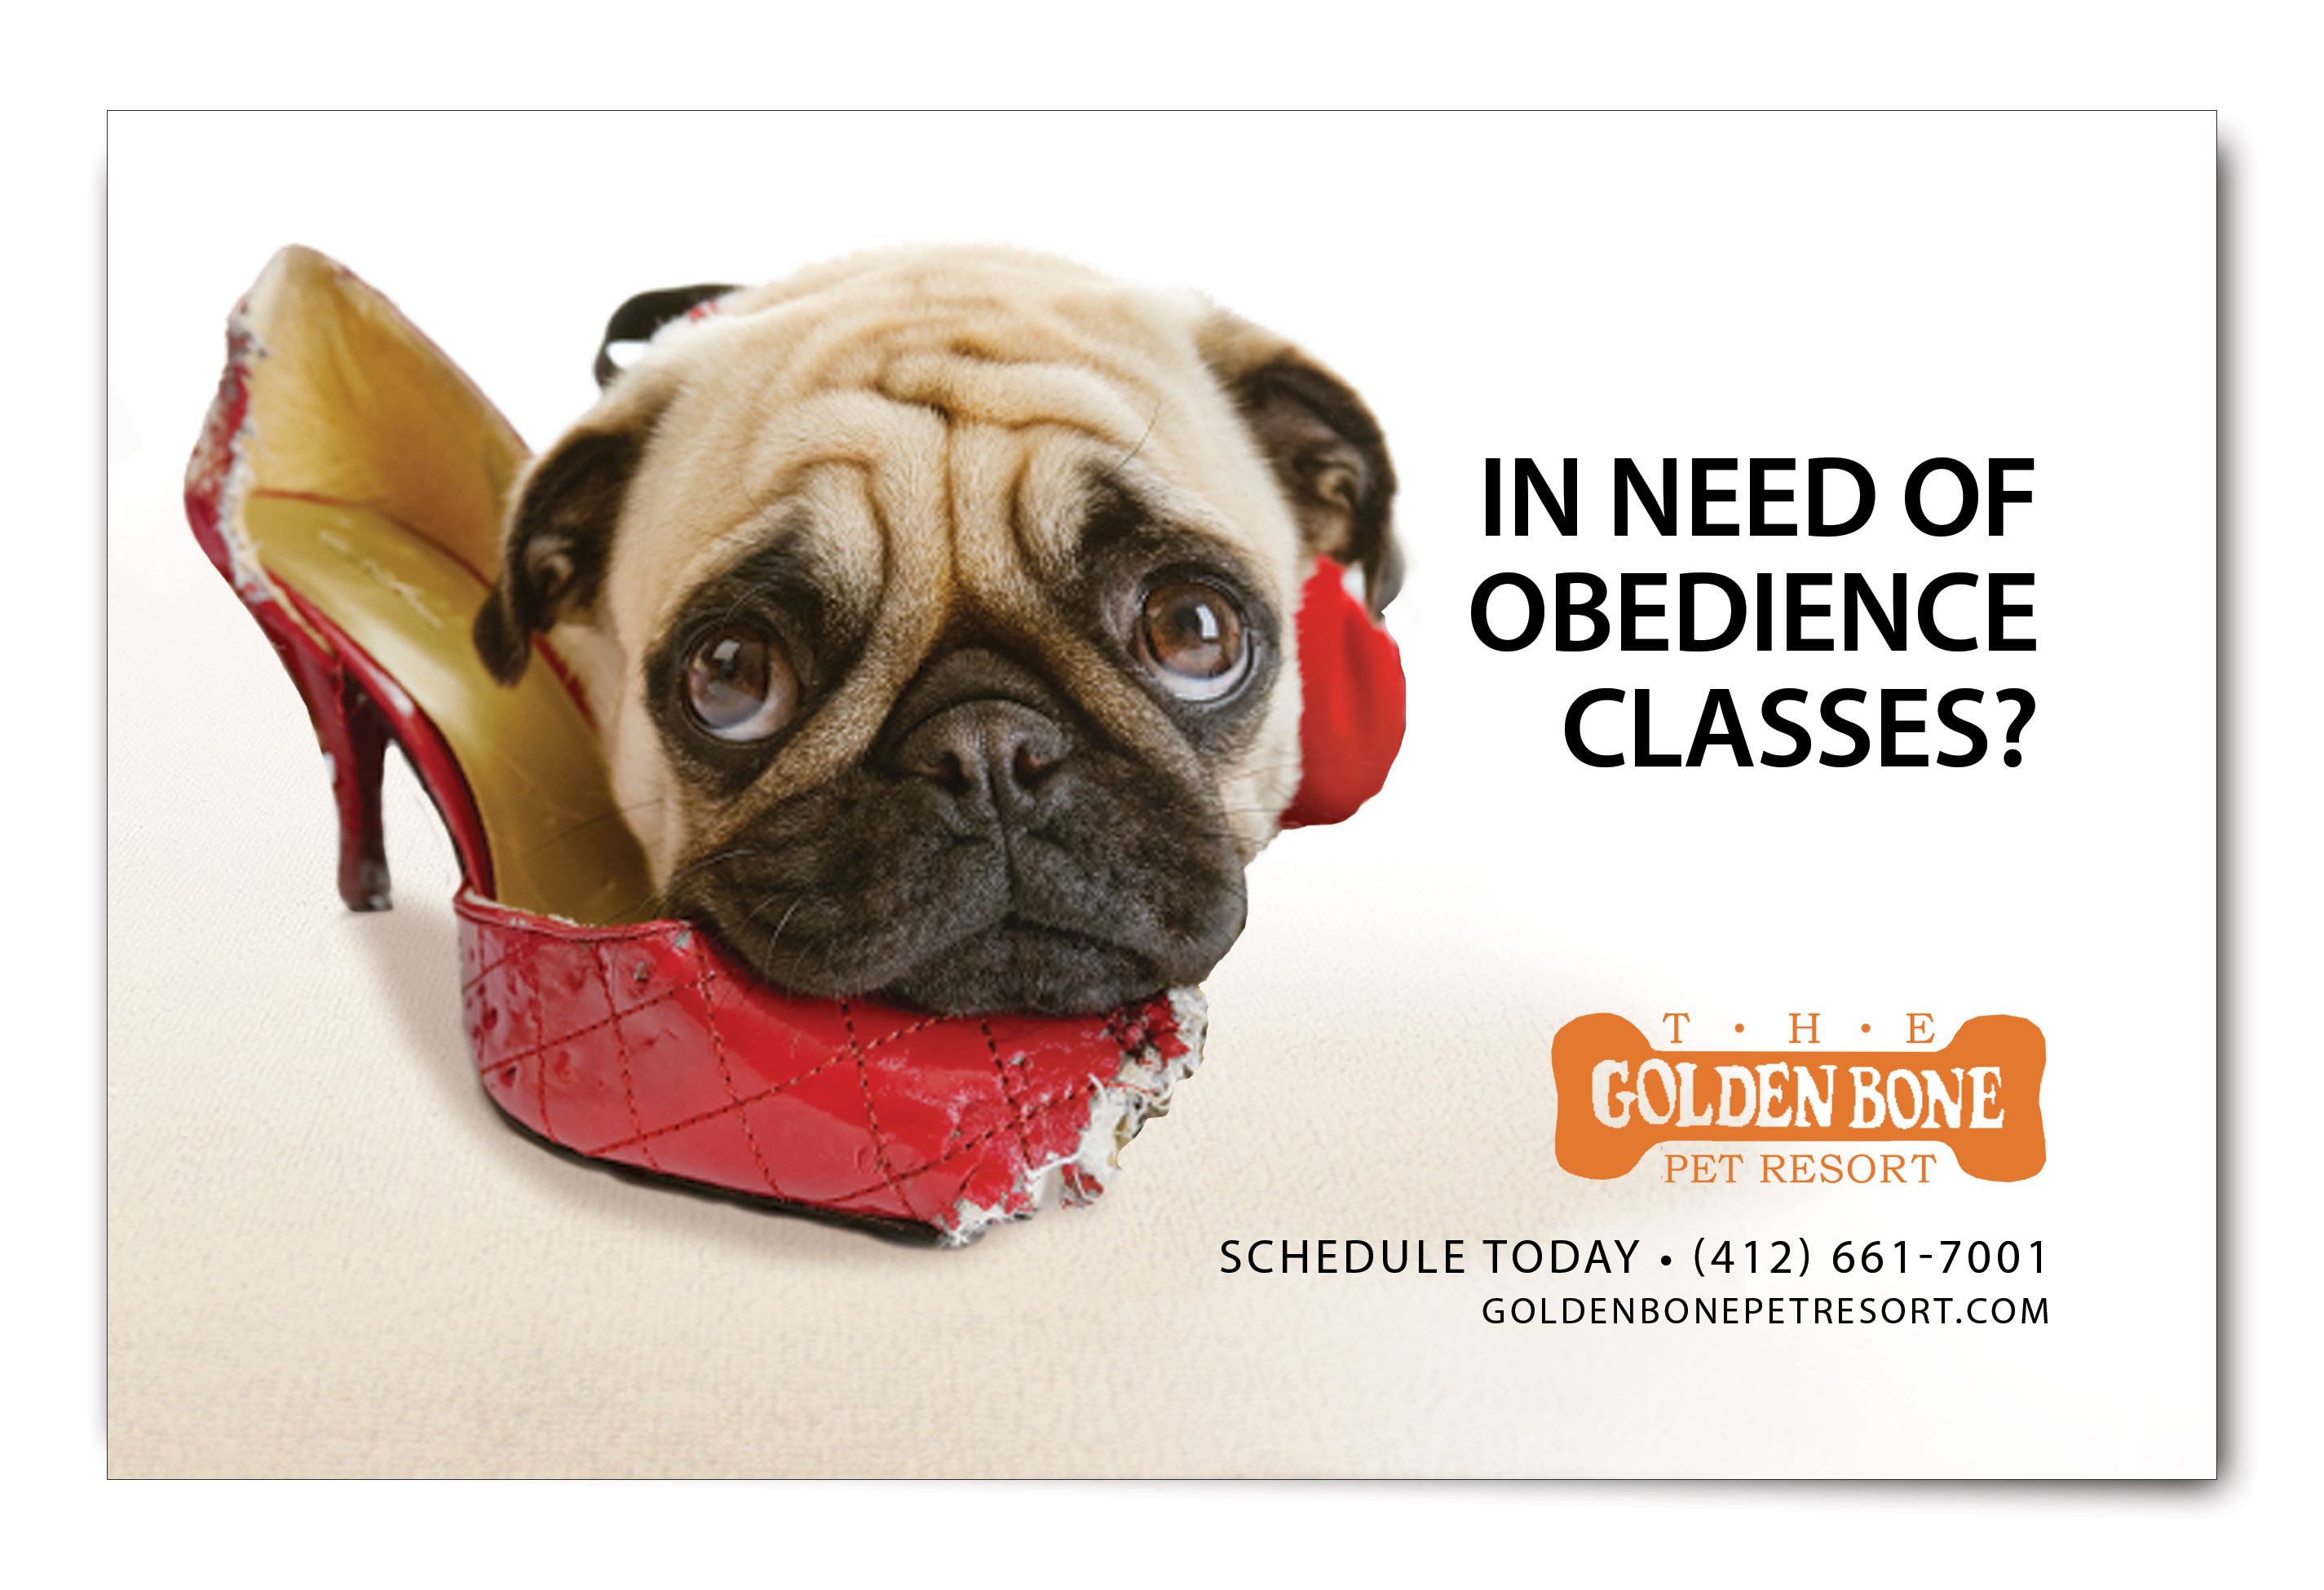 The Golden Bone Pet Resort Ad